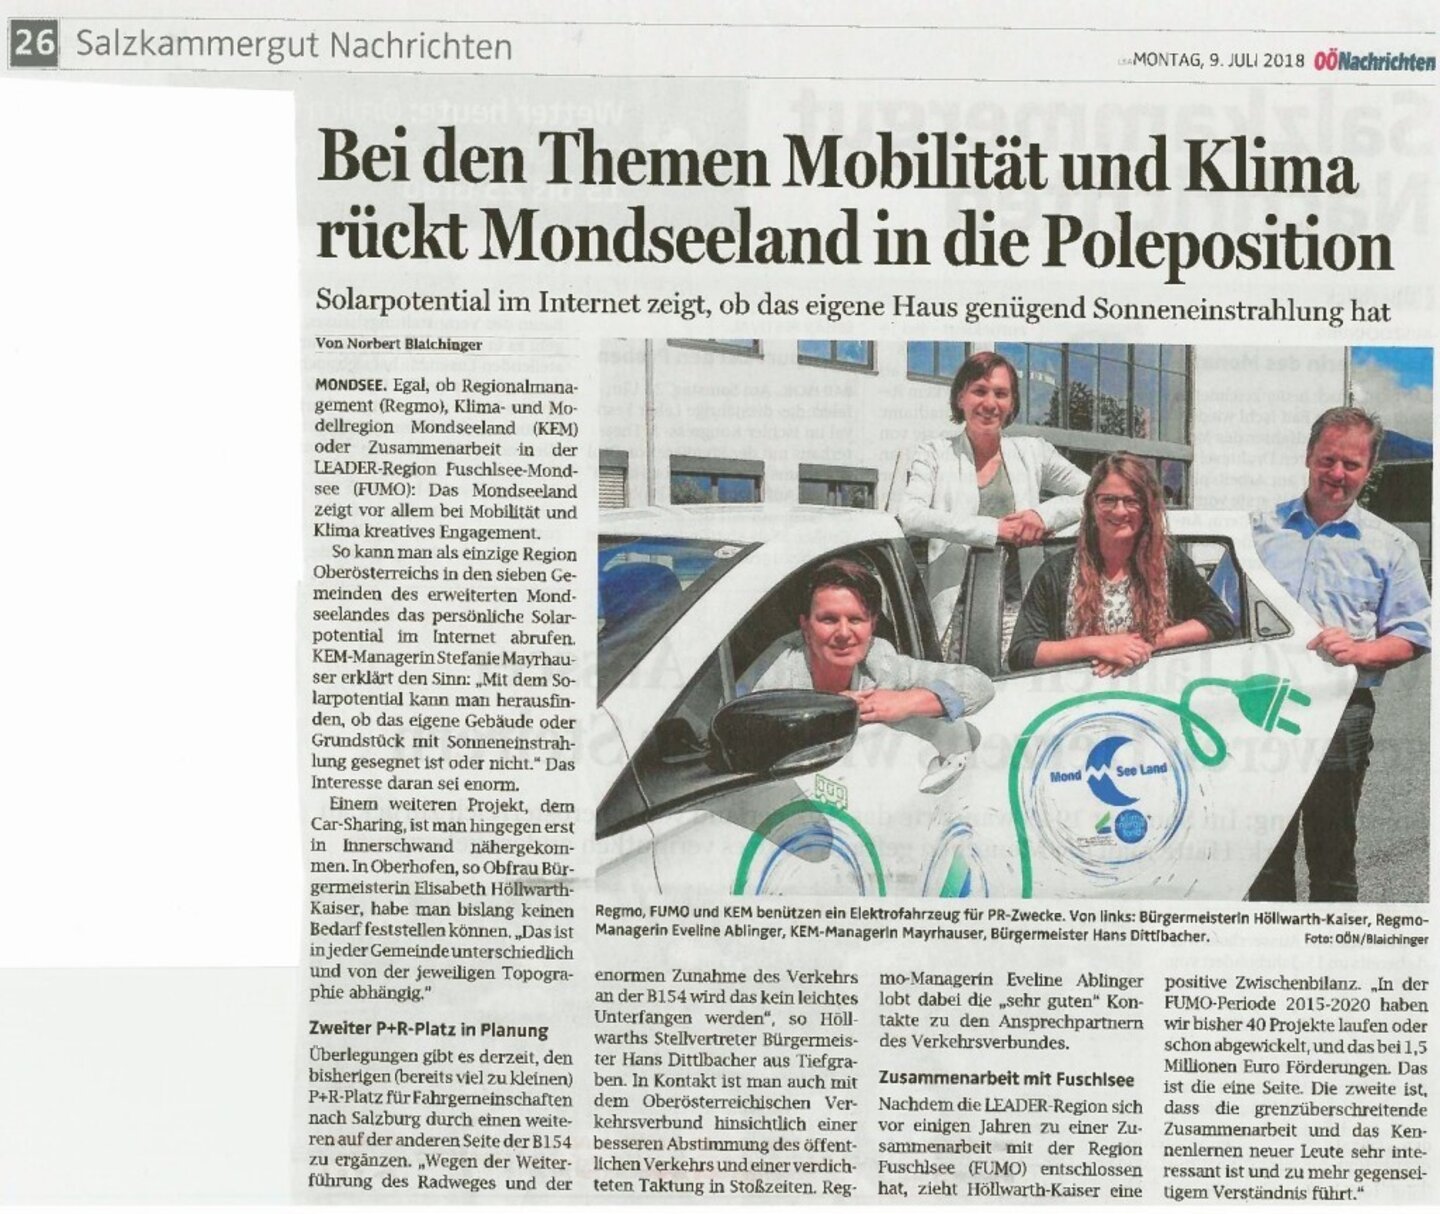 Link zu Online-Presseartikel: https://www.nachrichten.at/oberoesterreich/salzkammergut/Bei-den-Themen-Mobilitaet-und-Klima-rueckt-Mondseeland-in-die-Poleposition;art71,2945913